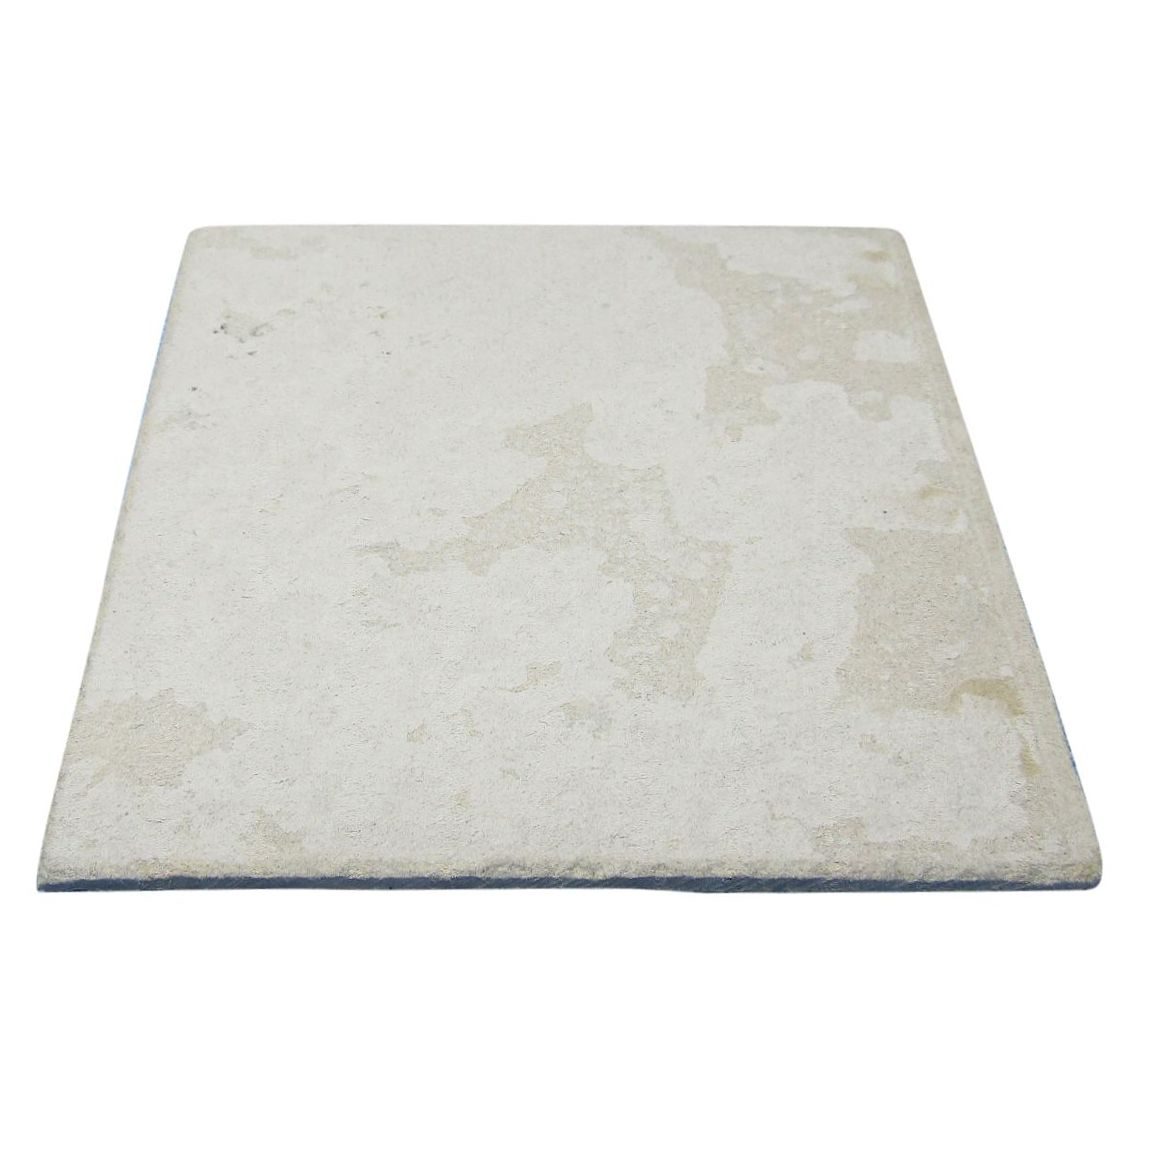 Mat, Bench, 300mm x 300mm, Heat Resistant (Cement Sheet) [LW3153